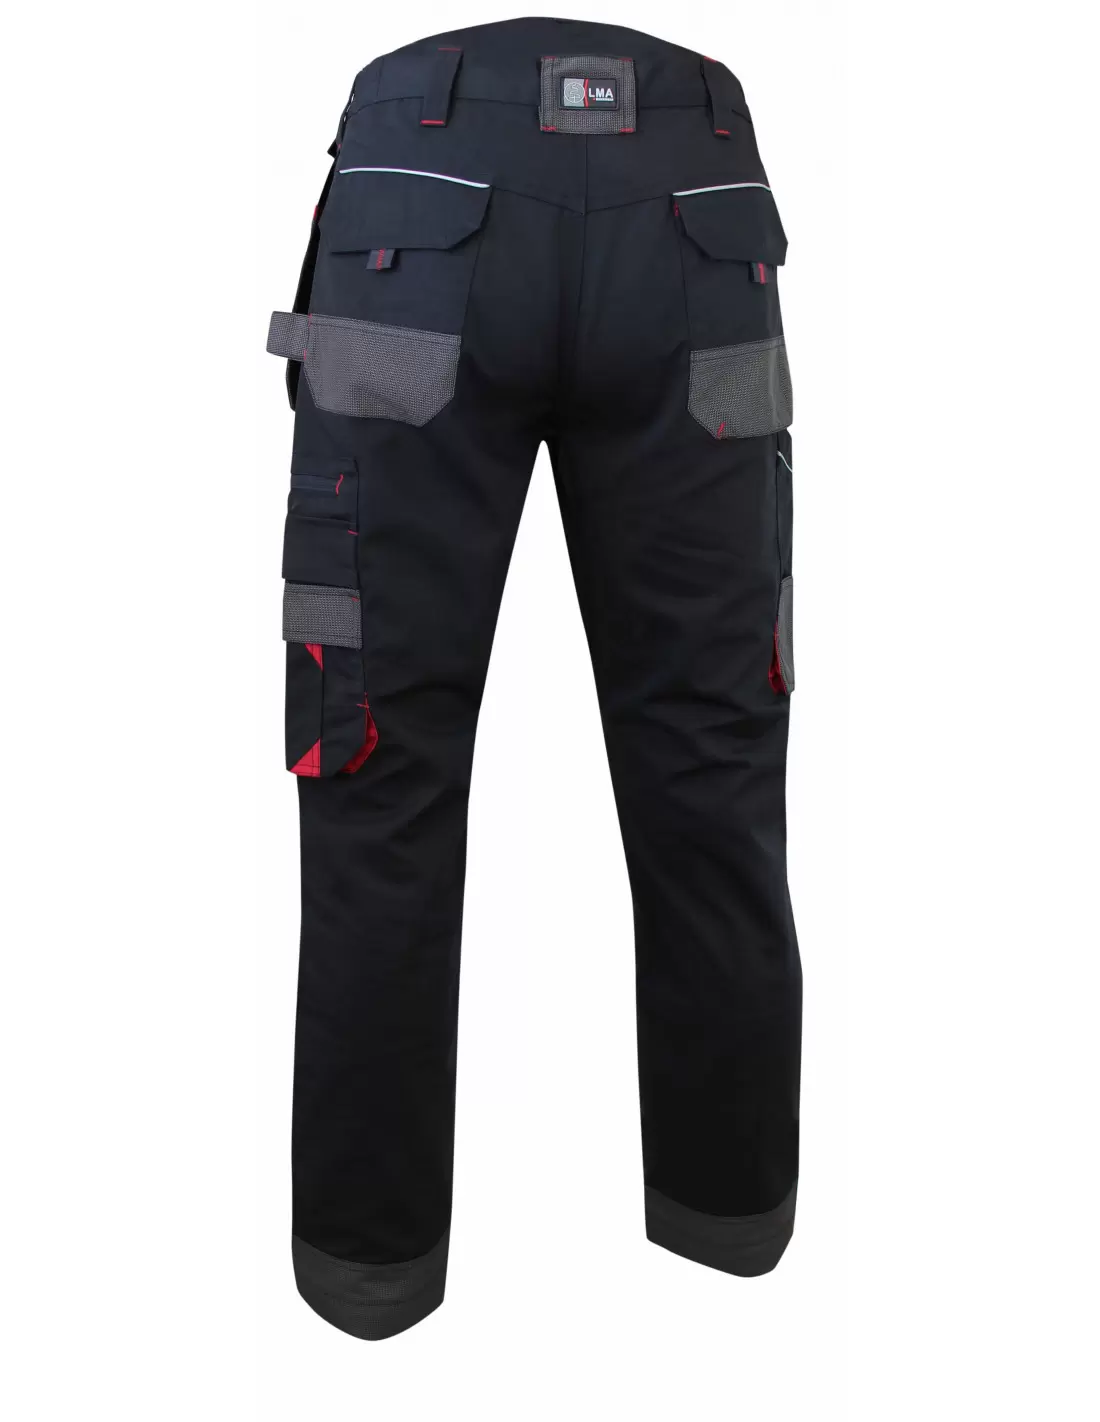 Pantalon Travail LMA  Équipement extérieur - Vive l'elevage